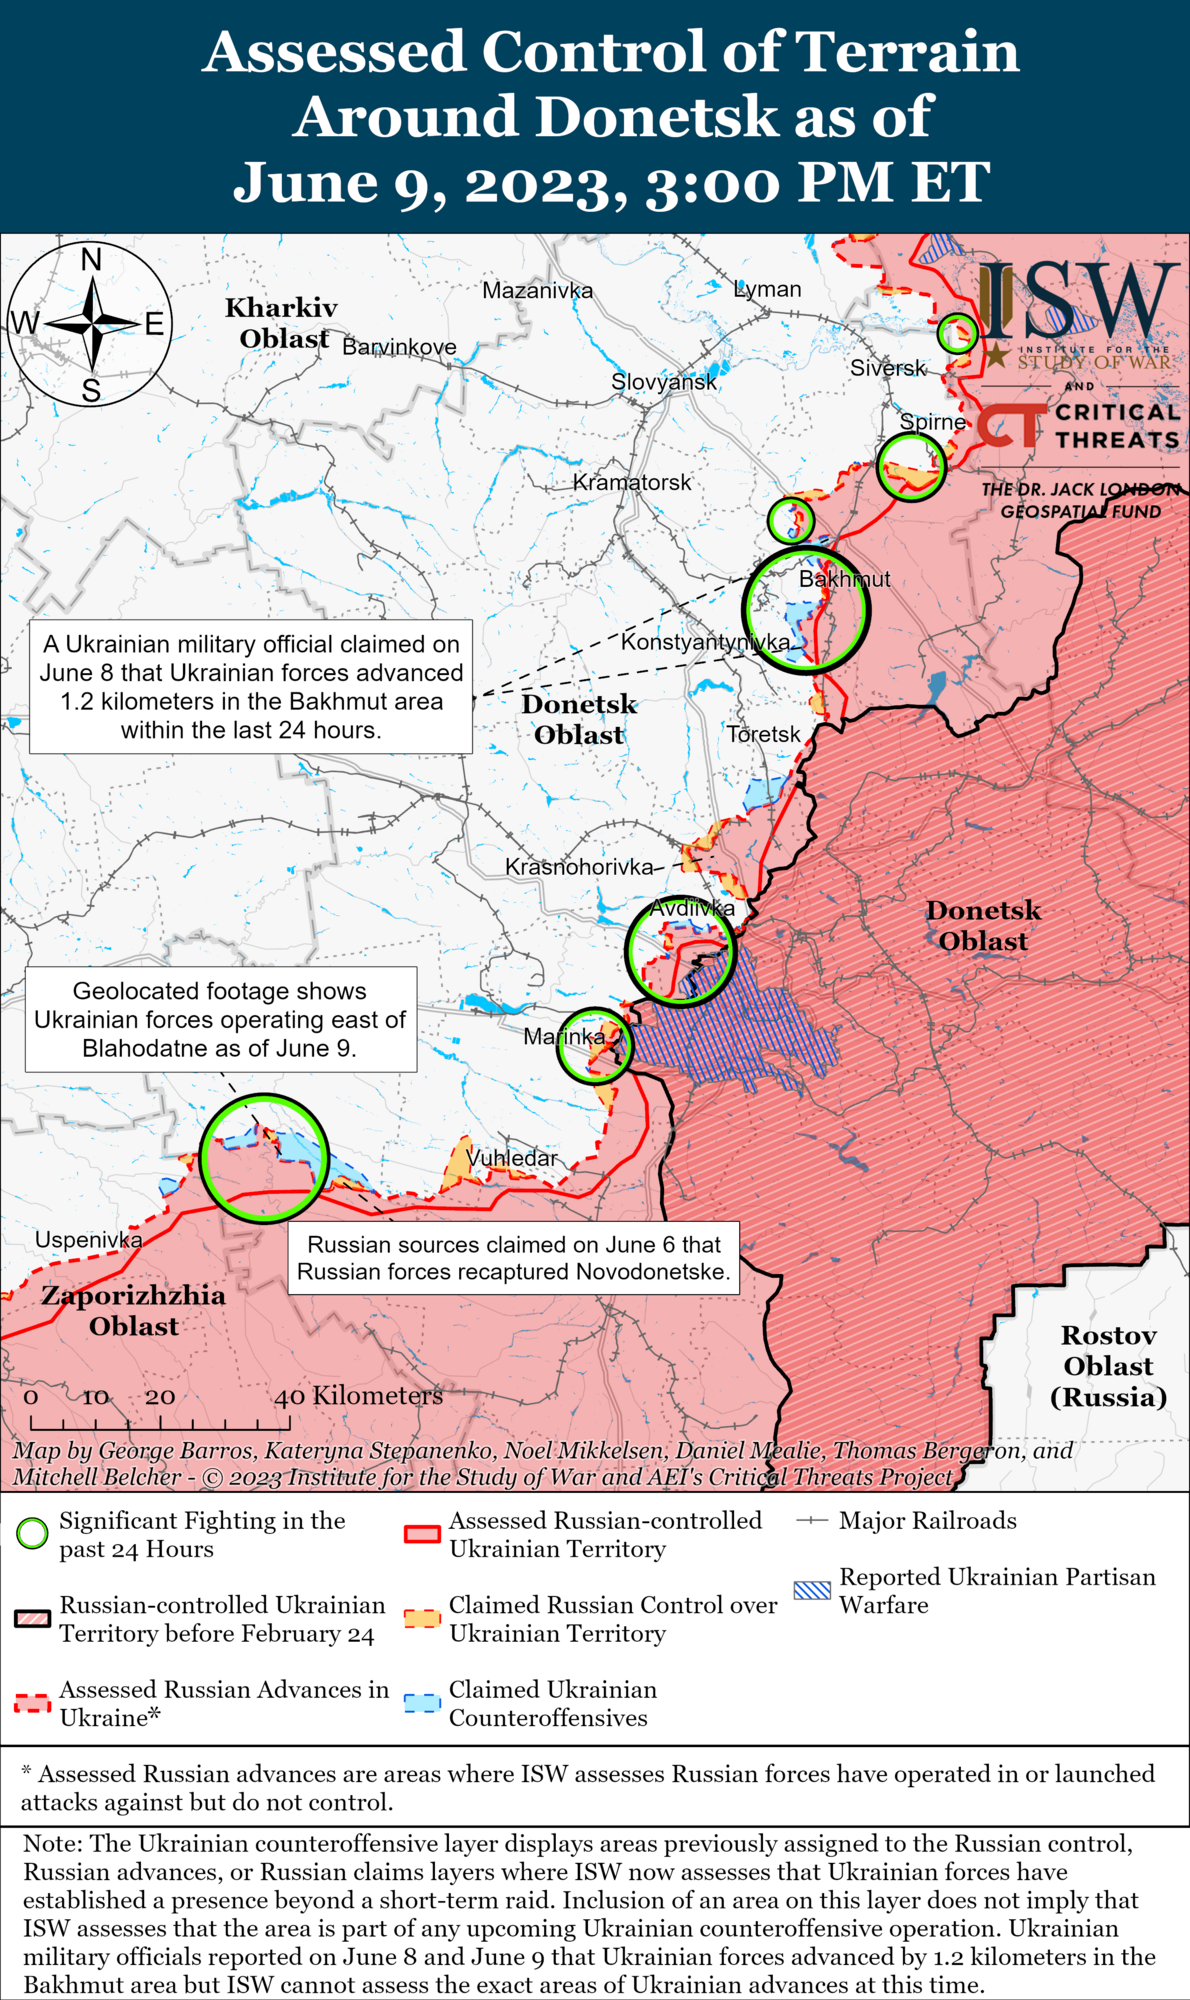 Україна досягла успіху контратаками на Донеччині, й Путін раптово визнав потенціал ЗСУ: в ISW пояснили зміну риторики Кремля